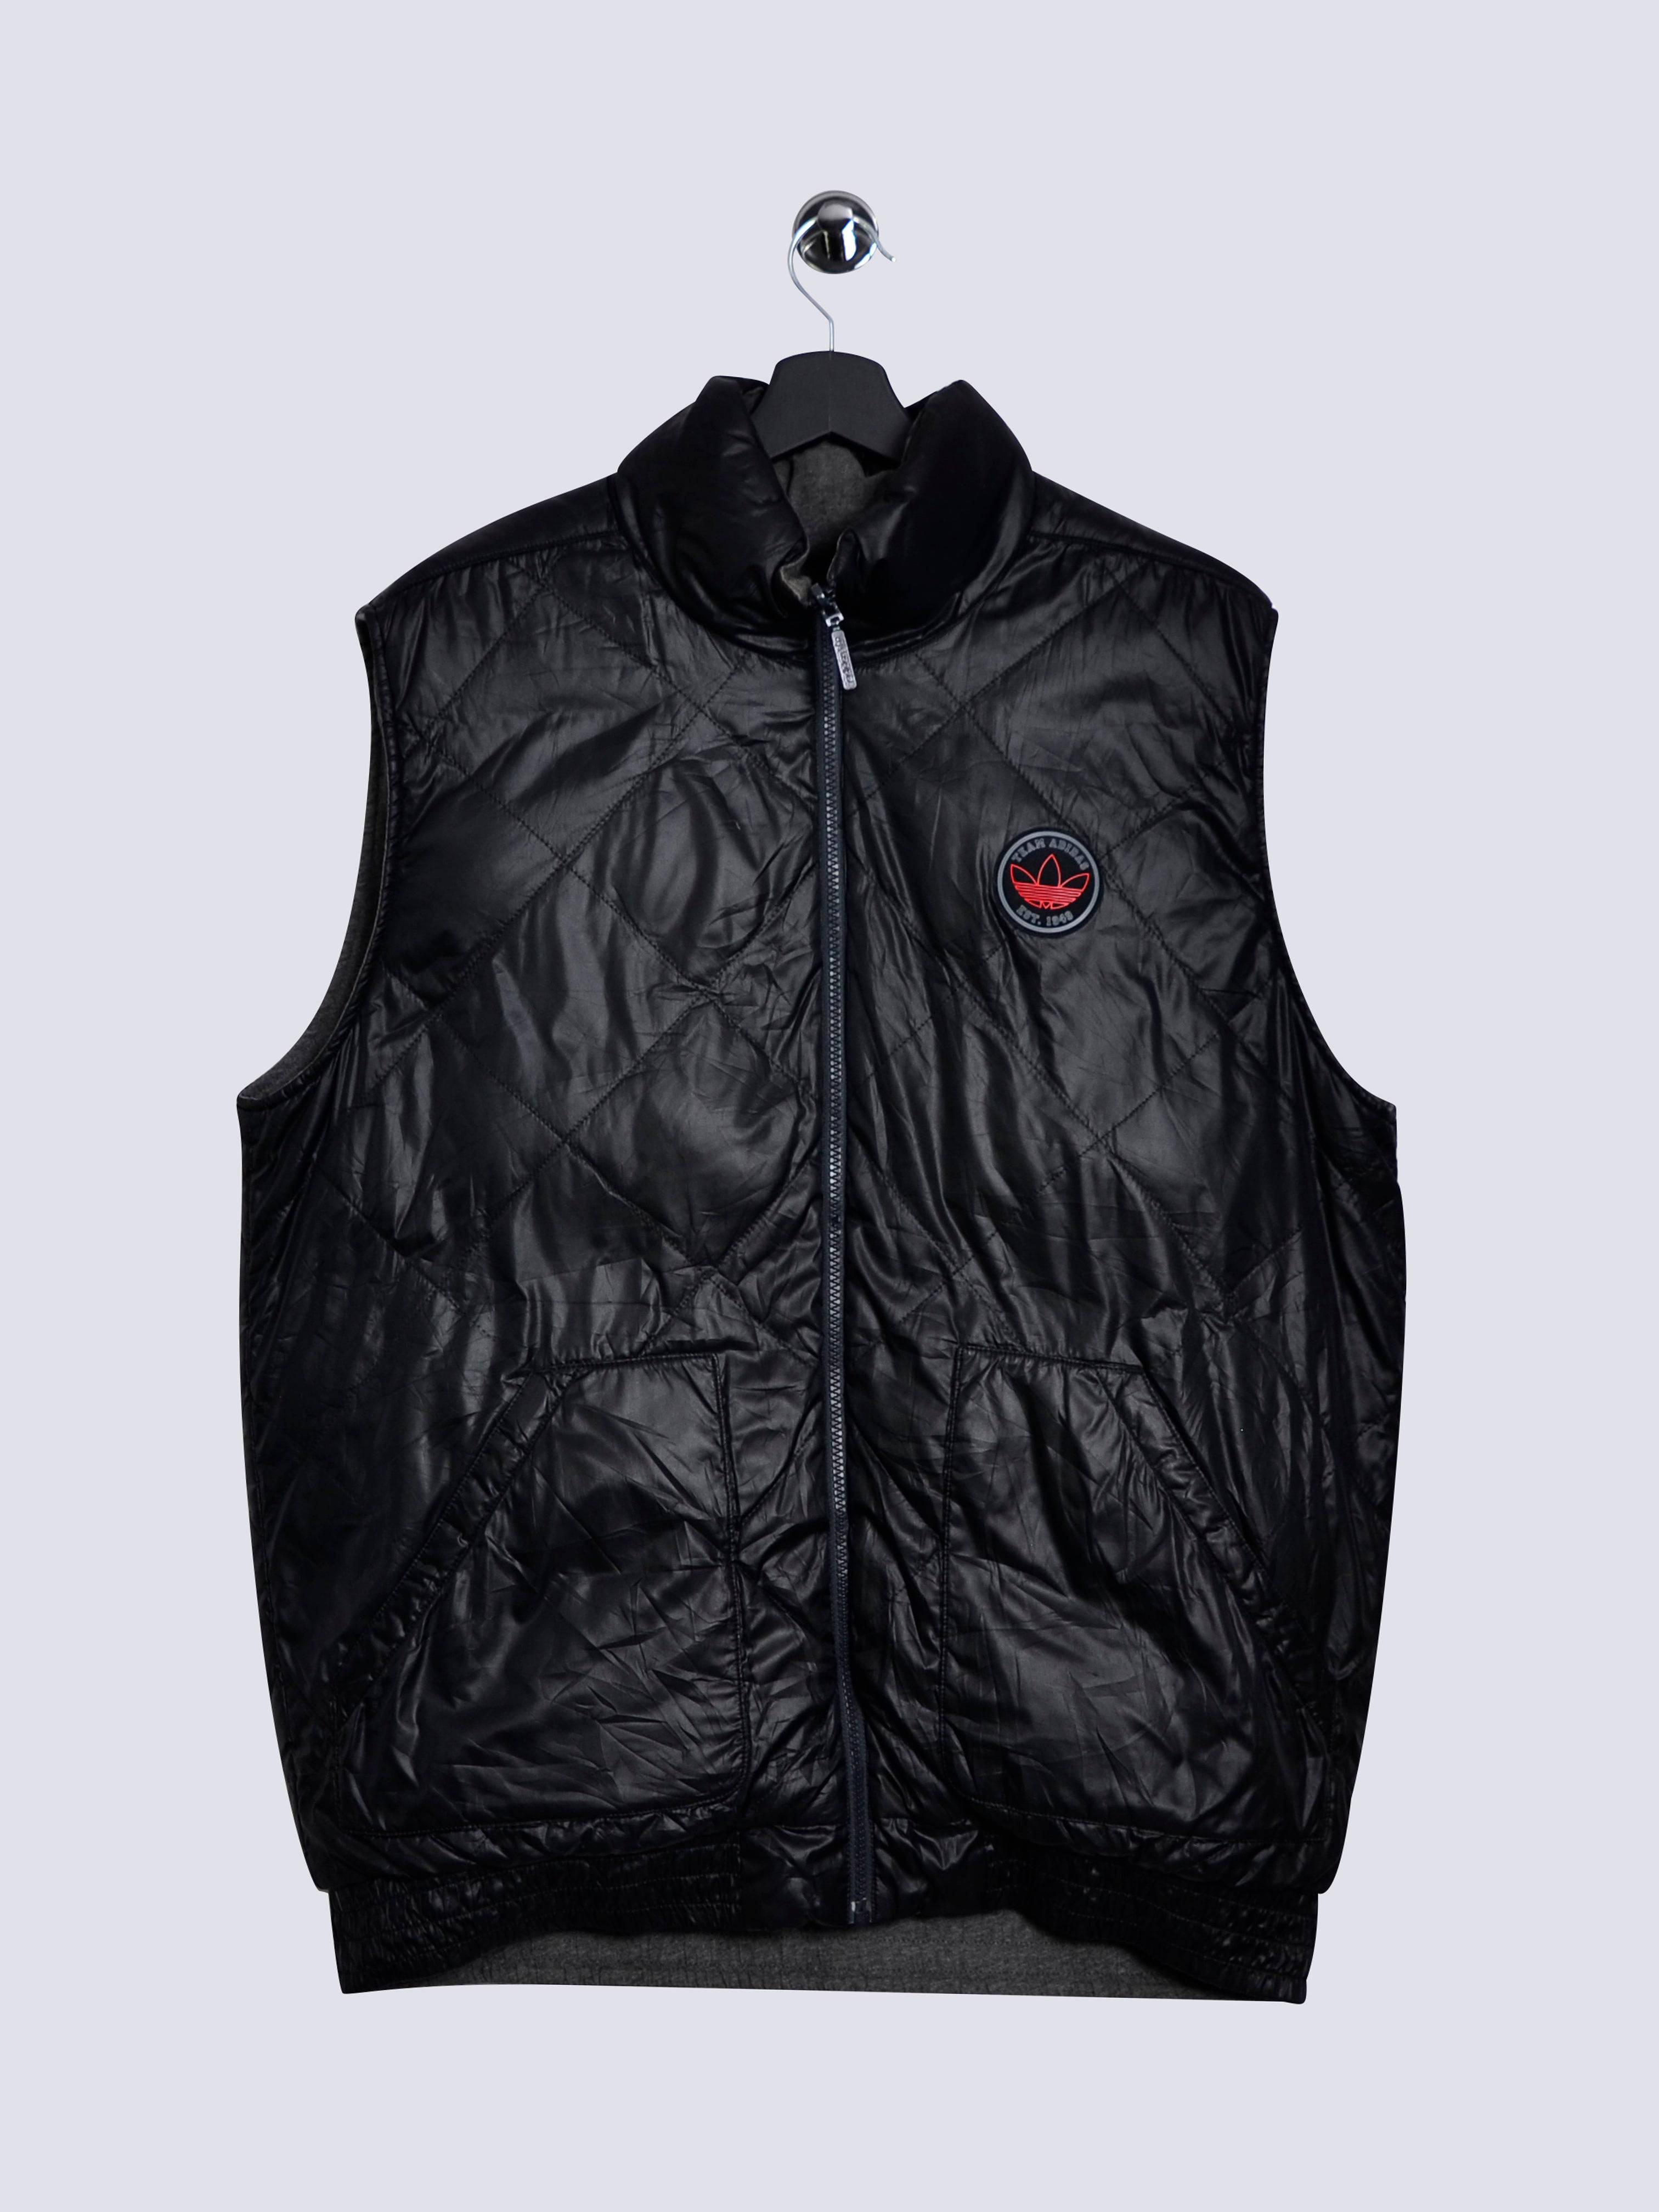 Adidas Team Vest Black // Large - RHAGHOUSE VINTAGE